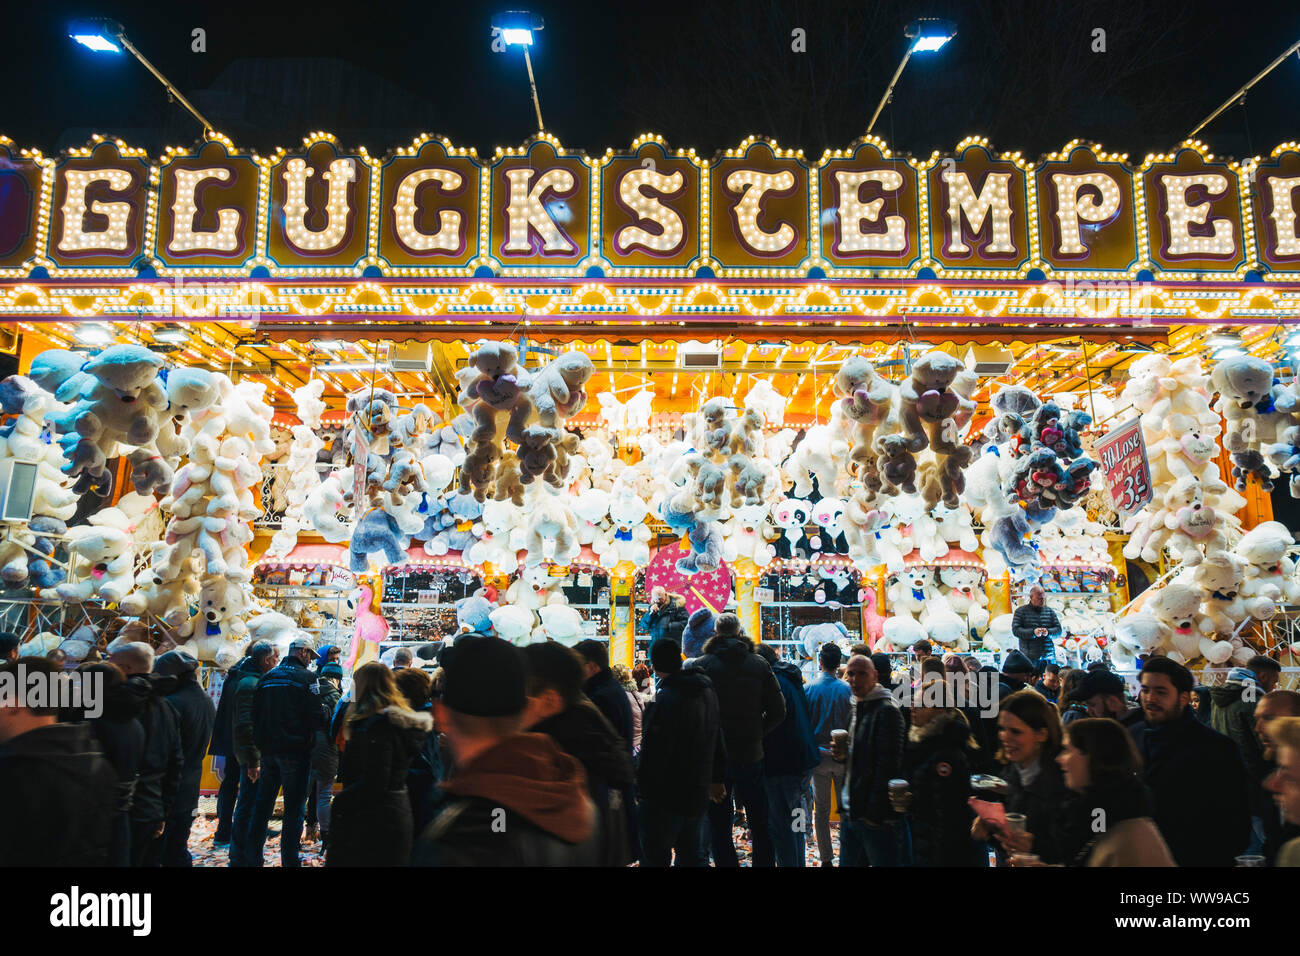 Decine di giocattolo animali appendere al di sopra di una lotteria-come il gioco mentre i partecipanti alla fiera a piedi passato una notte a una fiera di Amburgo, Germania Foto Stock